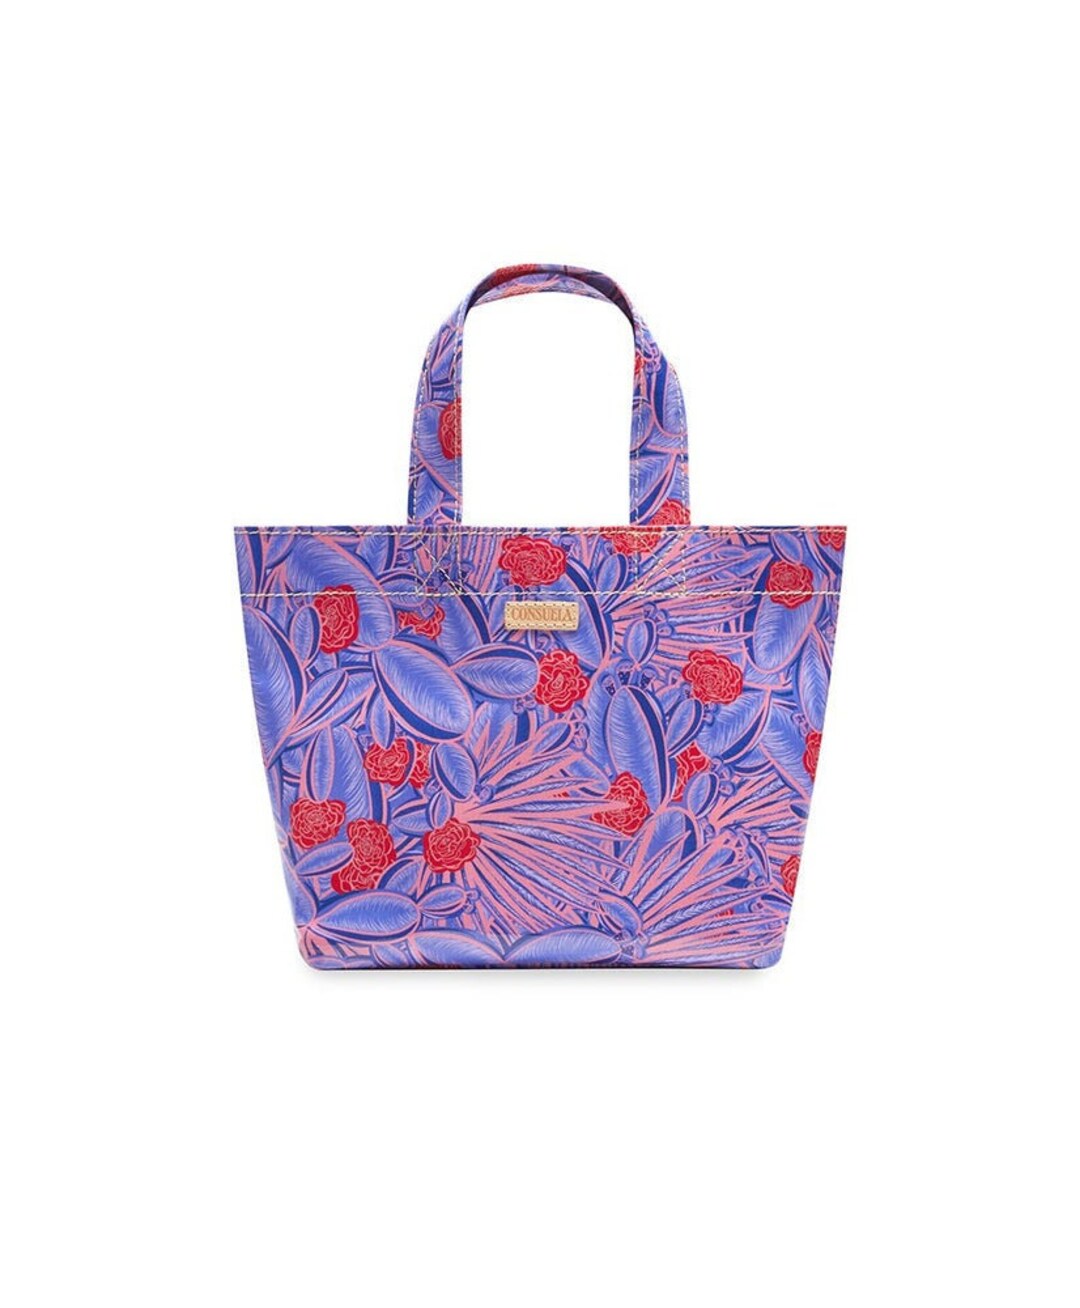 NWT Brand New Consuela Loretta Grab N' Go Mini Tote Bag - Etsy